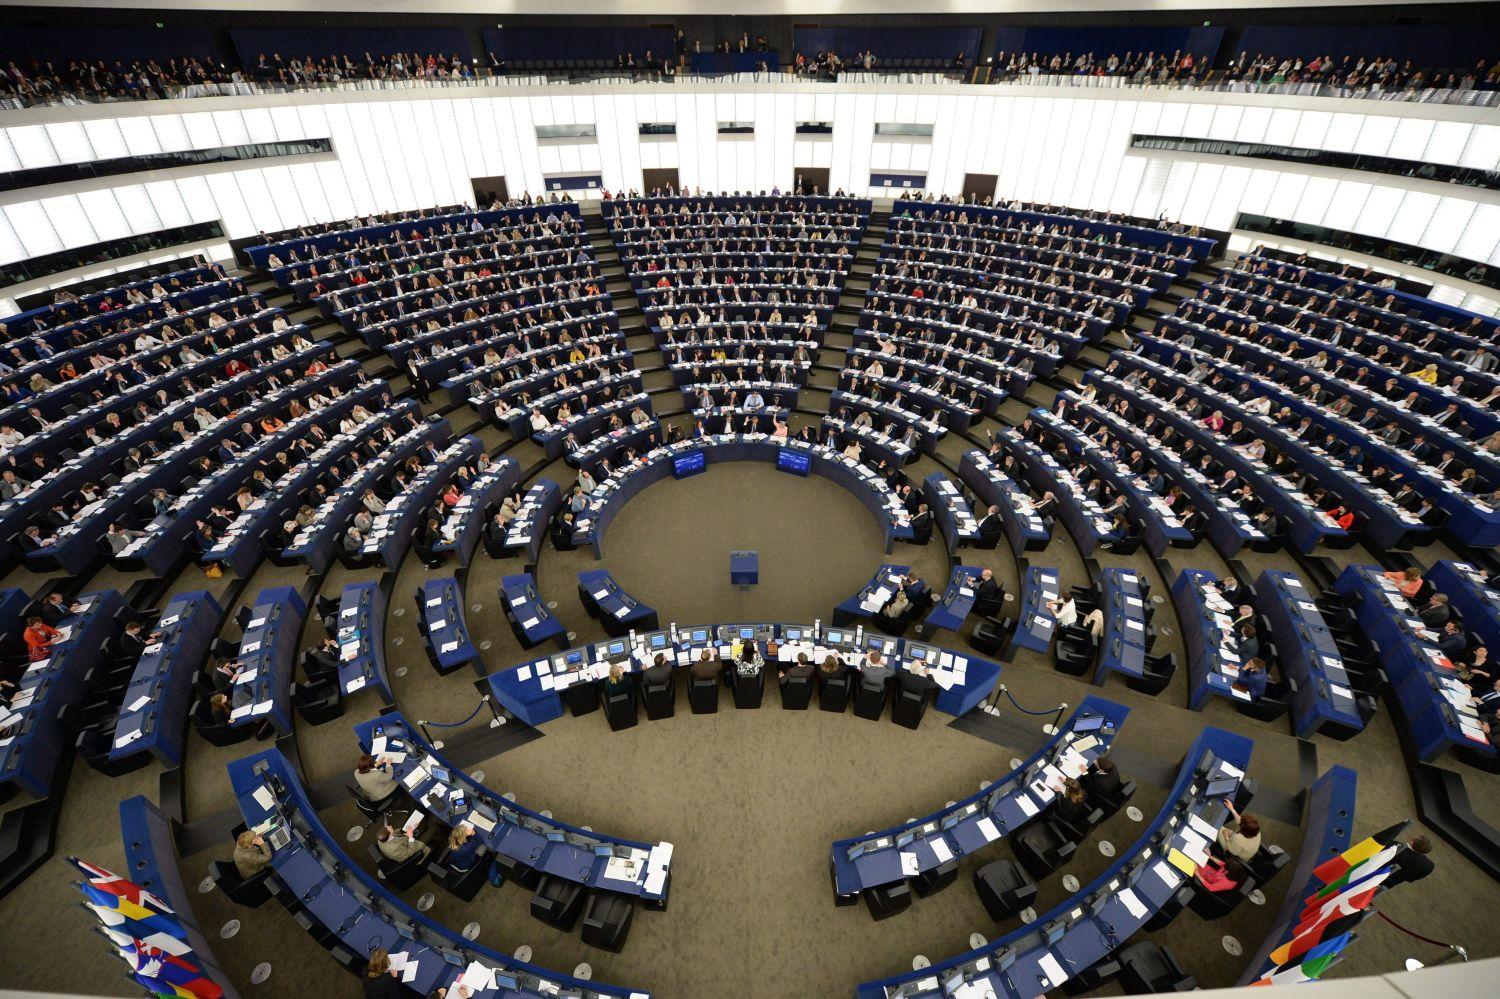 Képviselők szavaznak az EP délelőtti plenáris ülésén május 19-én Strasbourgban. A délutáni plenáris ülésen a magyarországi helyzet megvitatására is sor kerül Orbán Viktor miniszterelnök részvételével